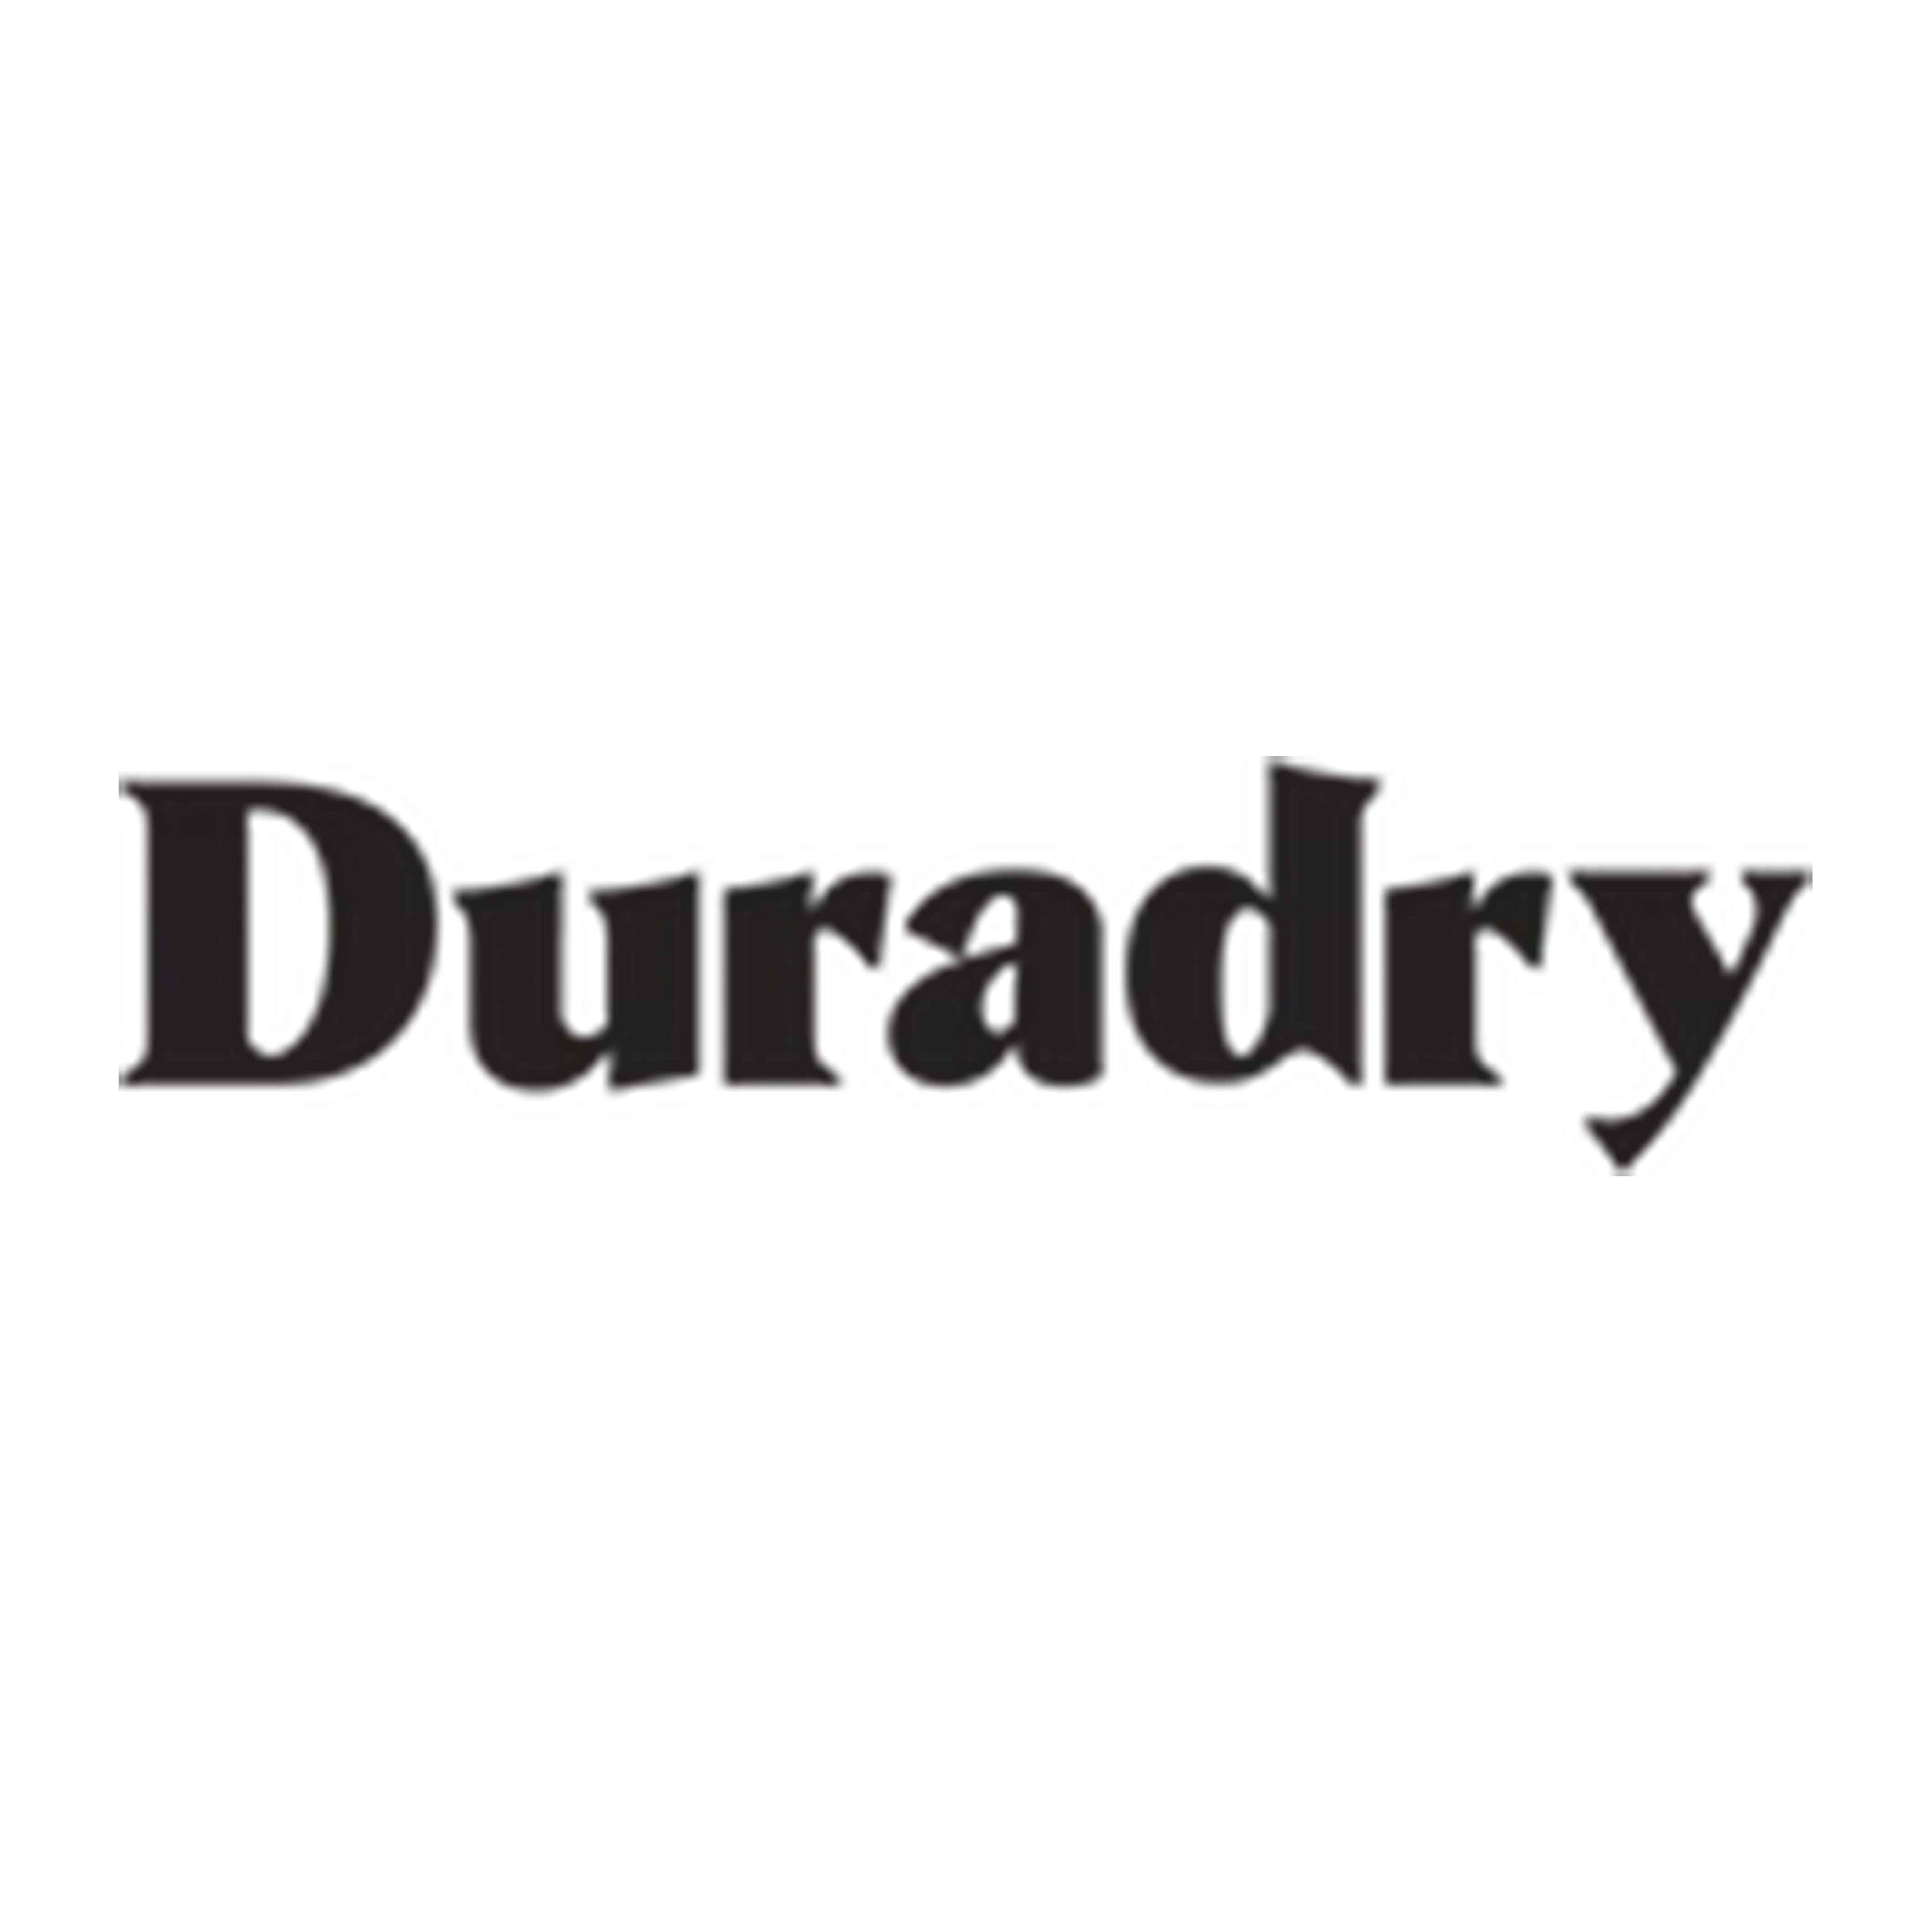 Duradry promo codes